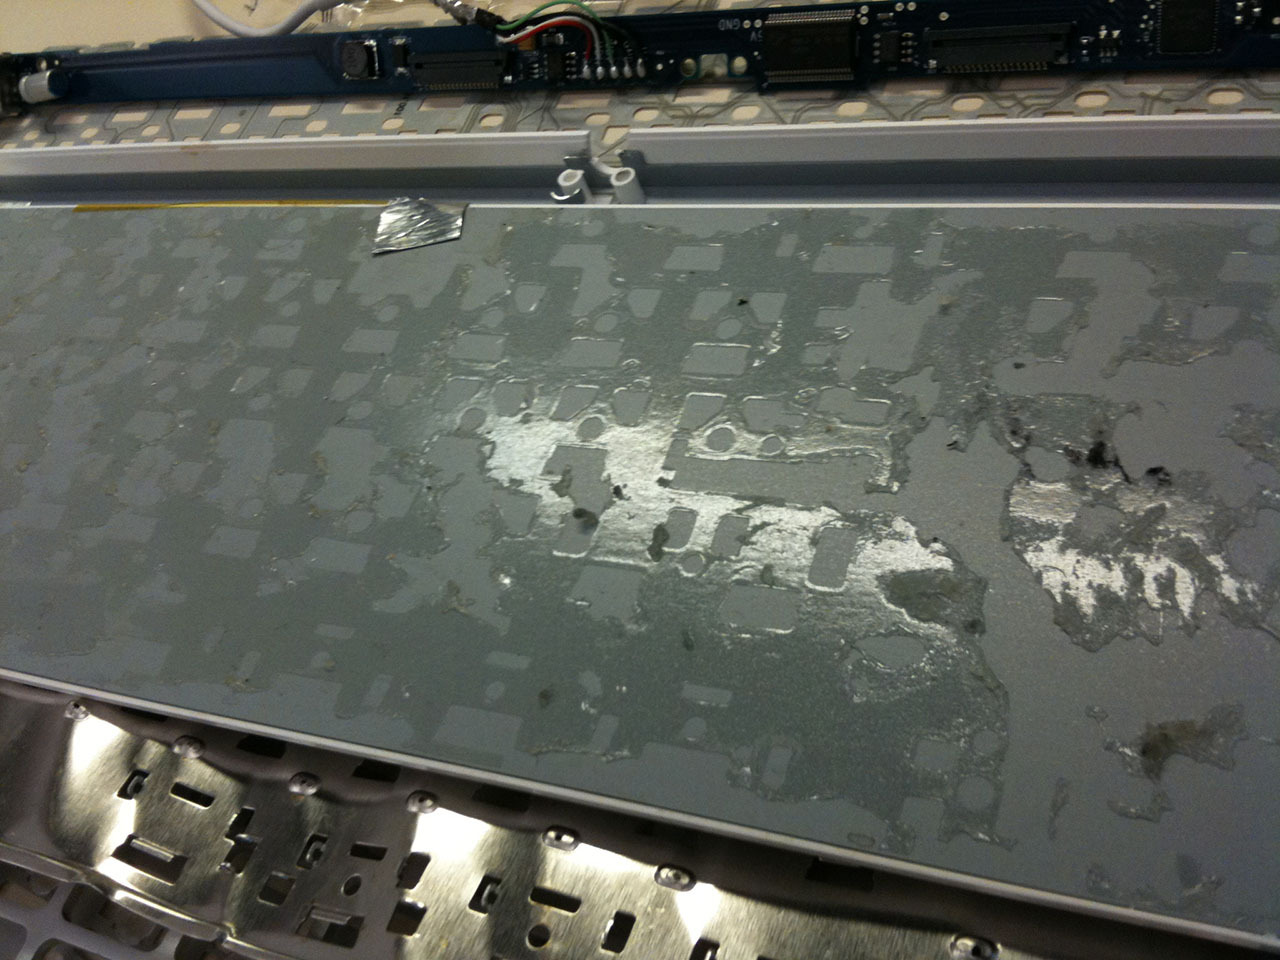 Восстановить Apple keyboard aluminium после попадания жидкости